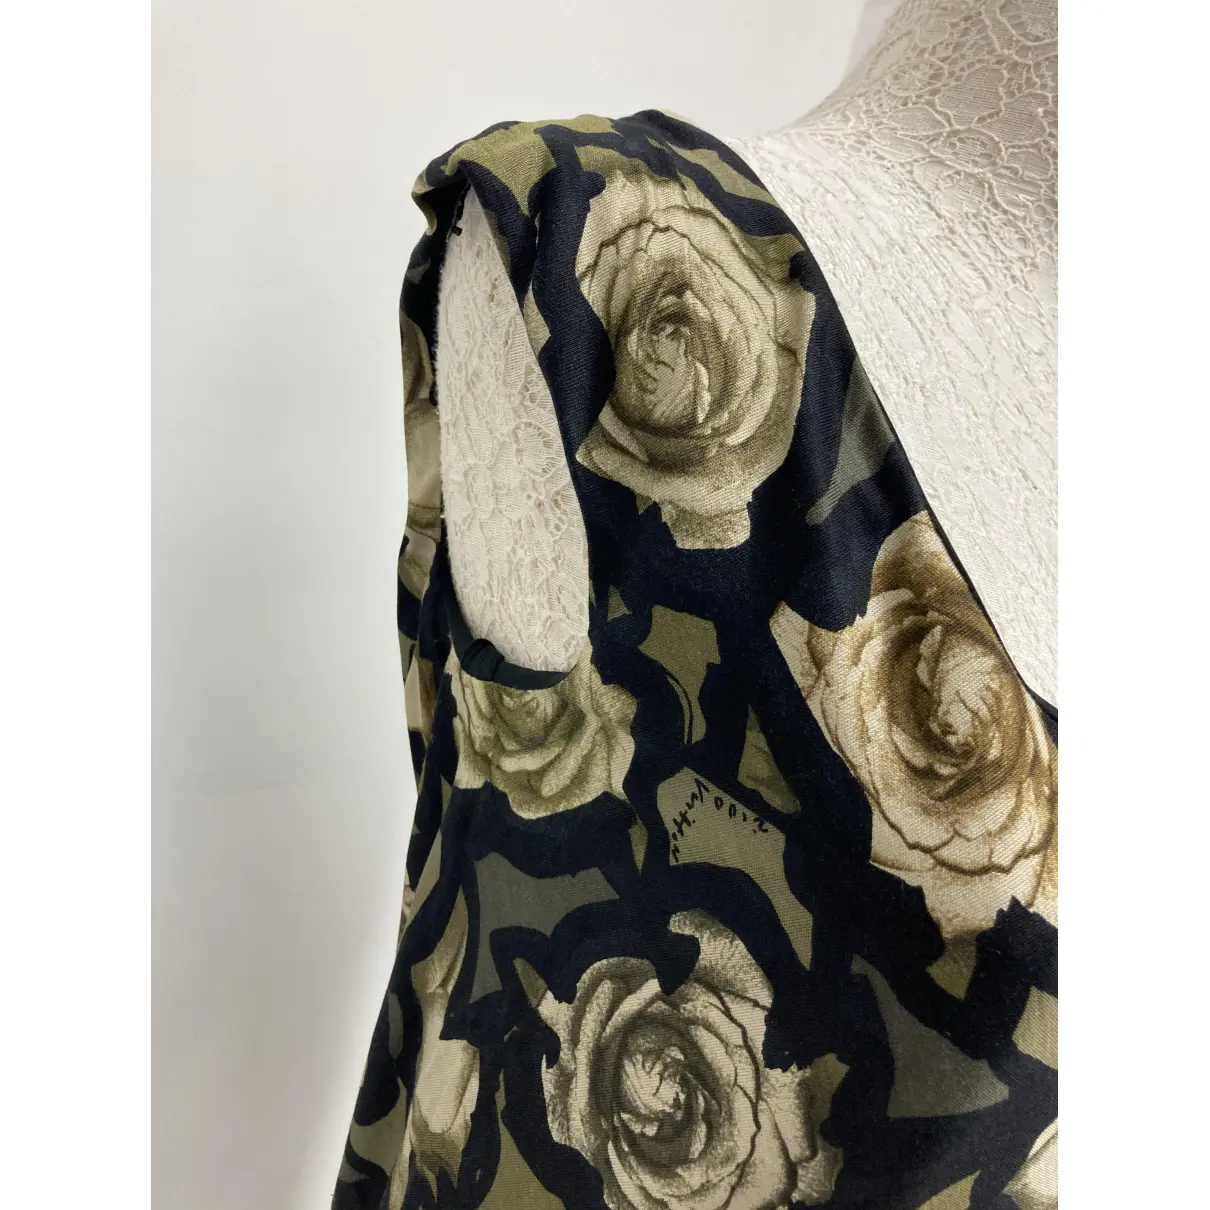 Silk mid-length dress Louis Vuitton